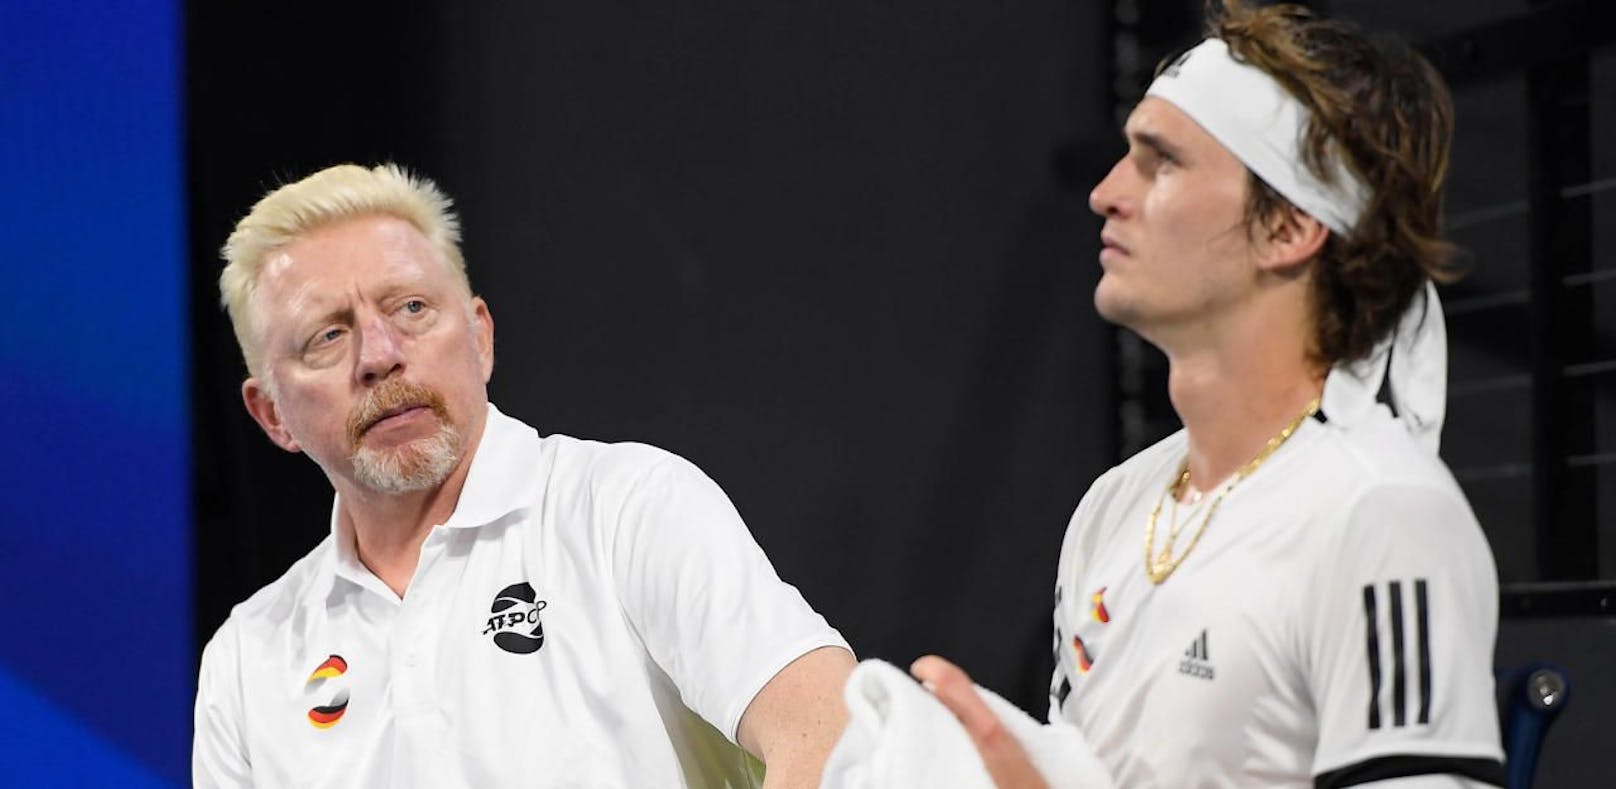 Boris Becker über Alex Zverev: "Das haben wir heute vermisst."